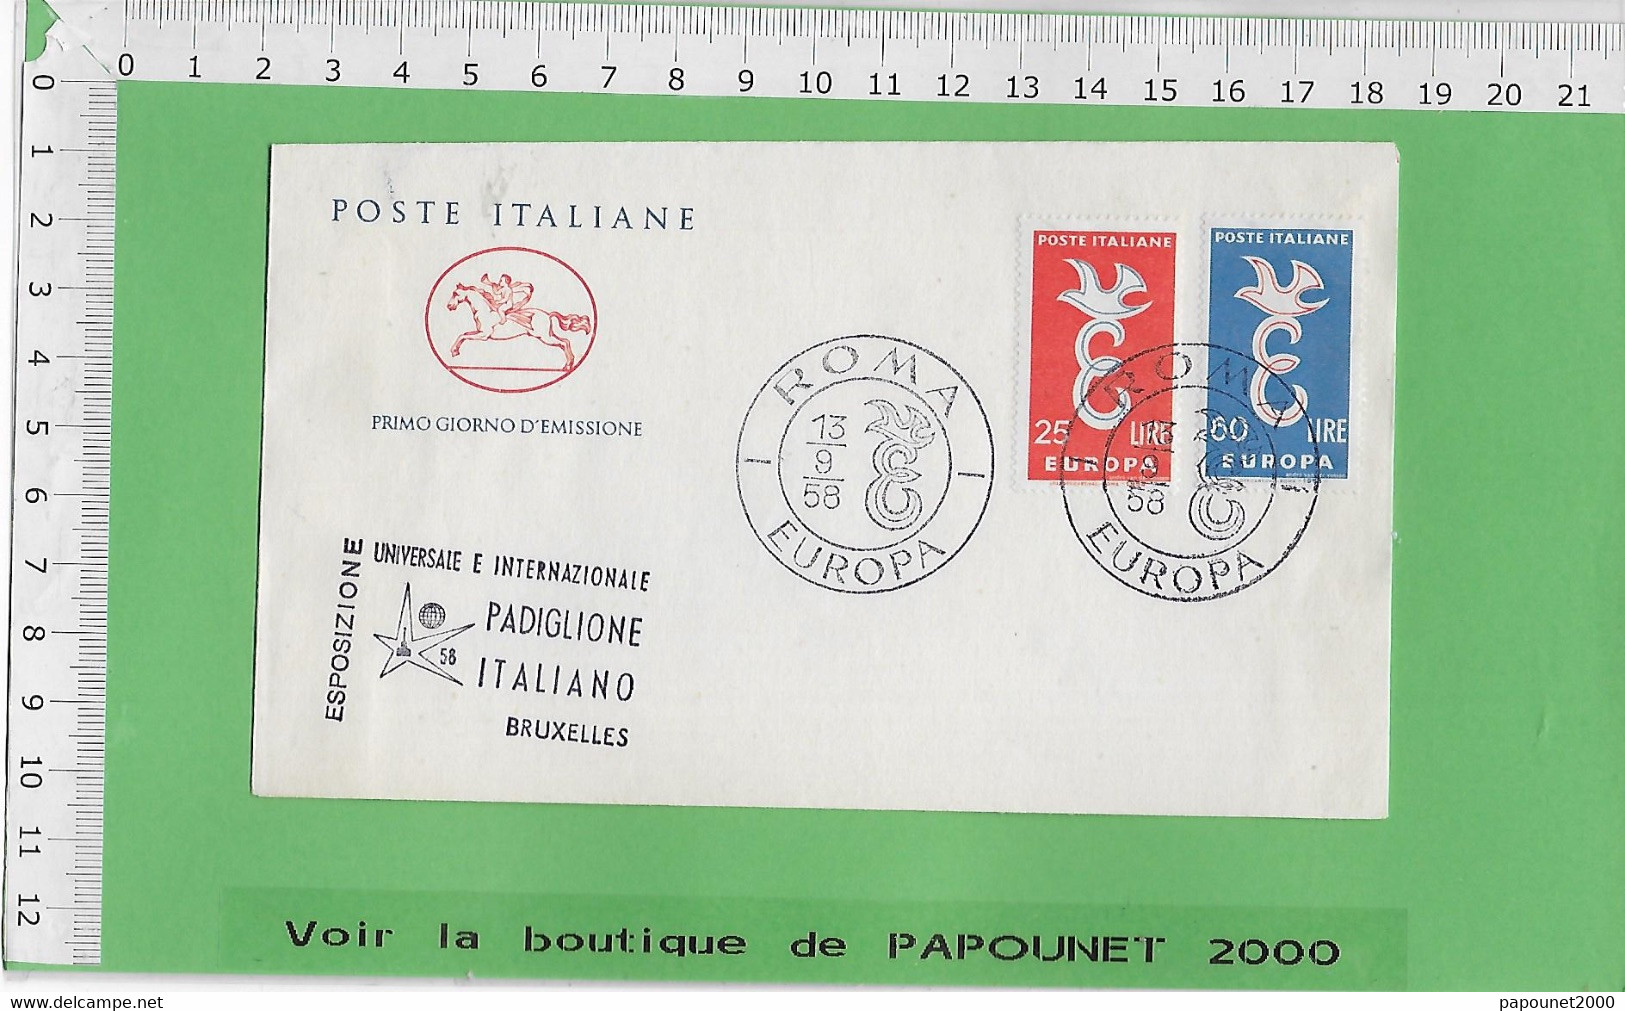 02578 - E BE04 1000-EXPO 58 : Timbre*Enveloppe / PRIMO GIORNO D EMISSIONE: PAVILLON ITALIEN - 1958 – Bruxelles (Belgio)